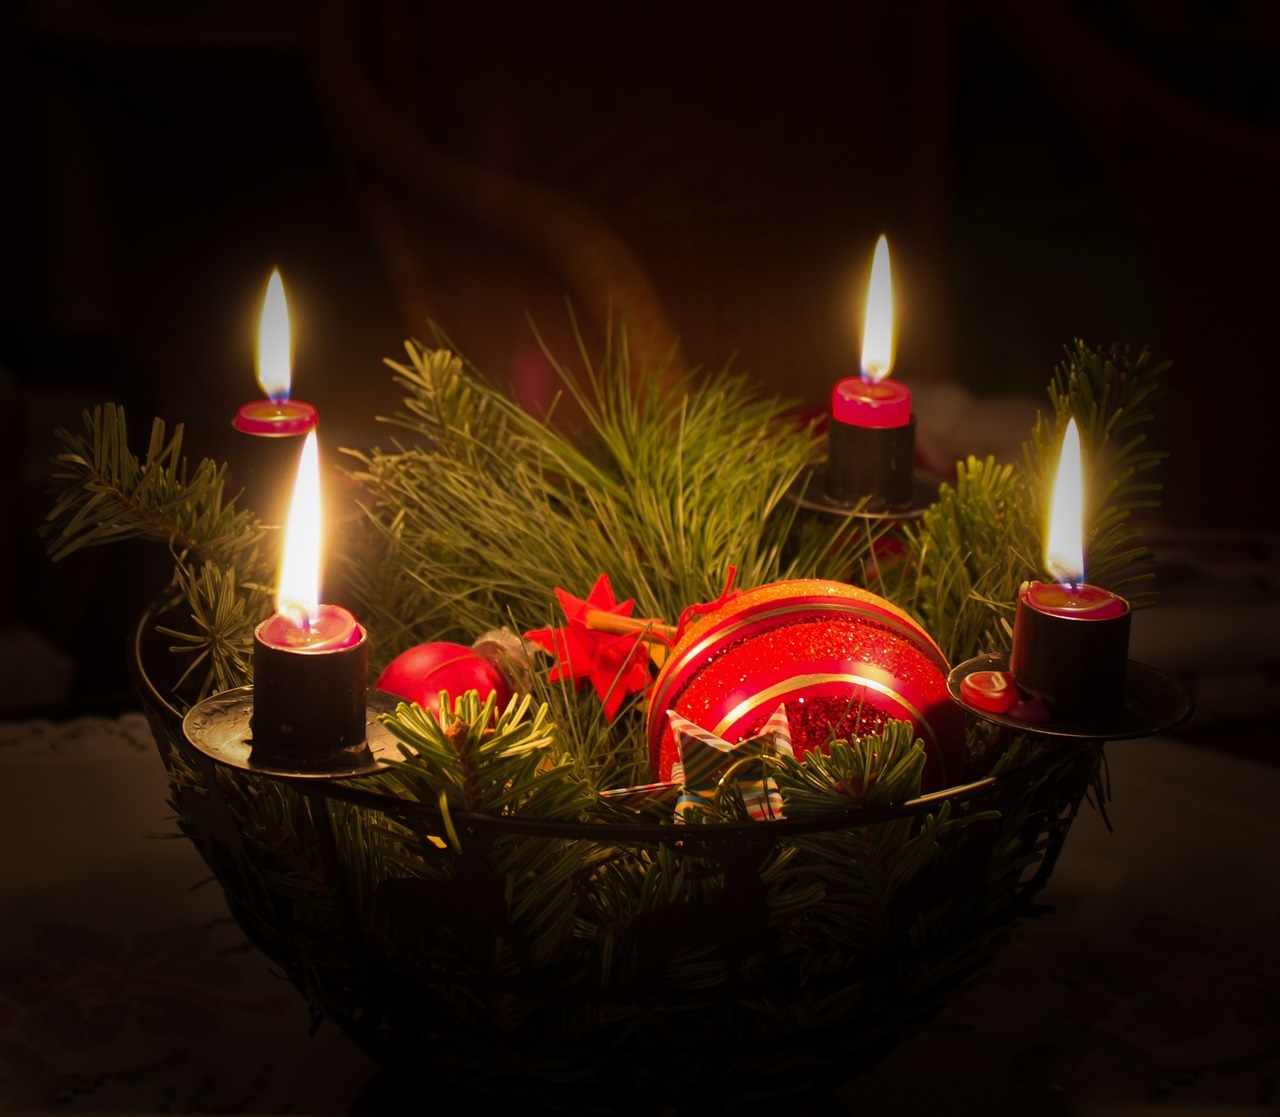 Symbolbild für den Beitrag "Sicher durch die Weihnachtszeit". Man sieht einen Kerzenkranz mit vier leuchteden Kerzen.